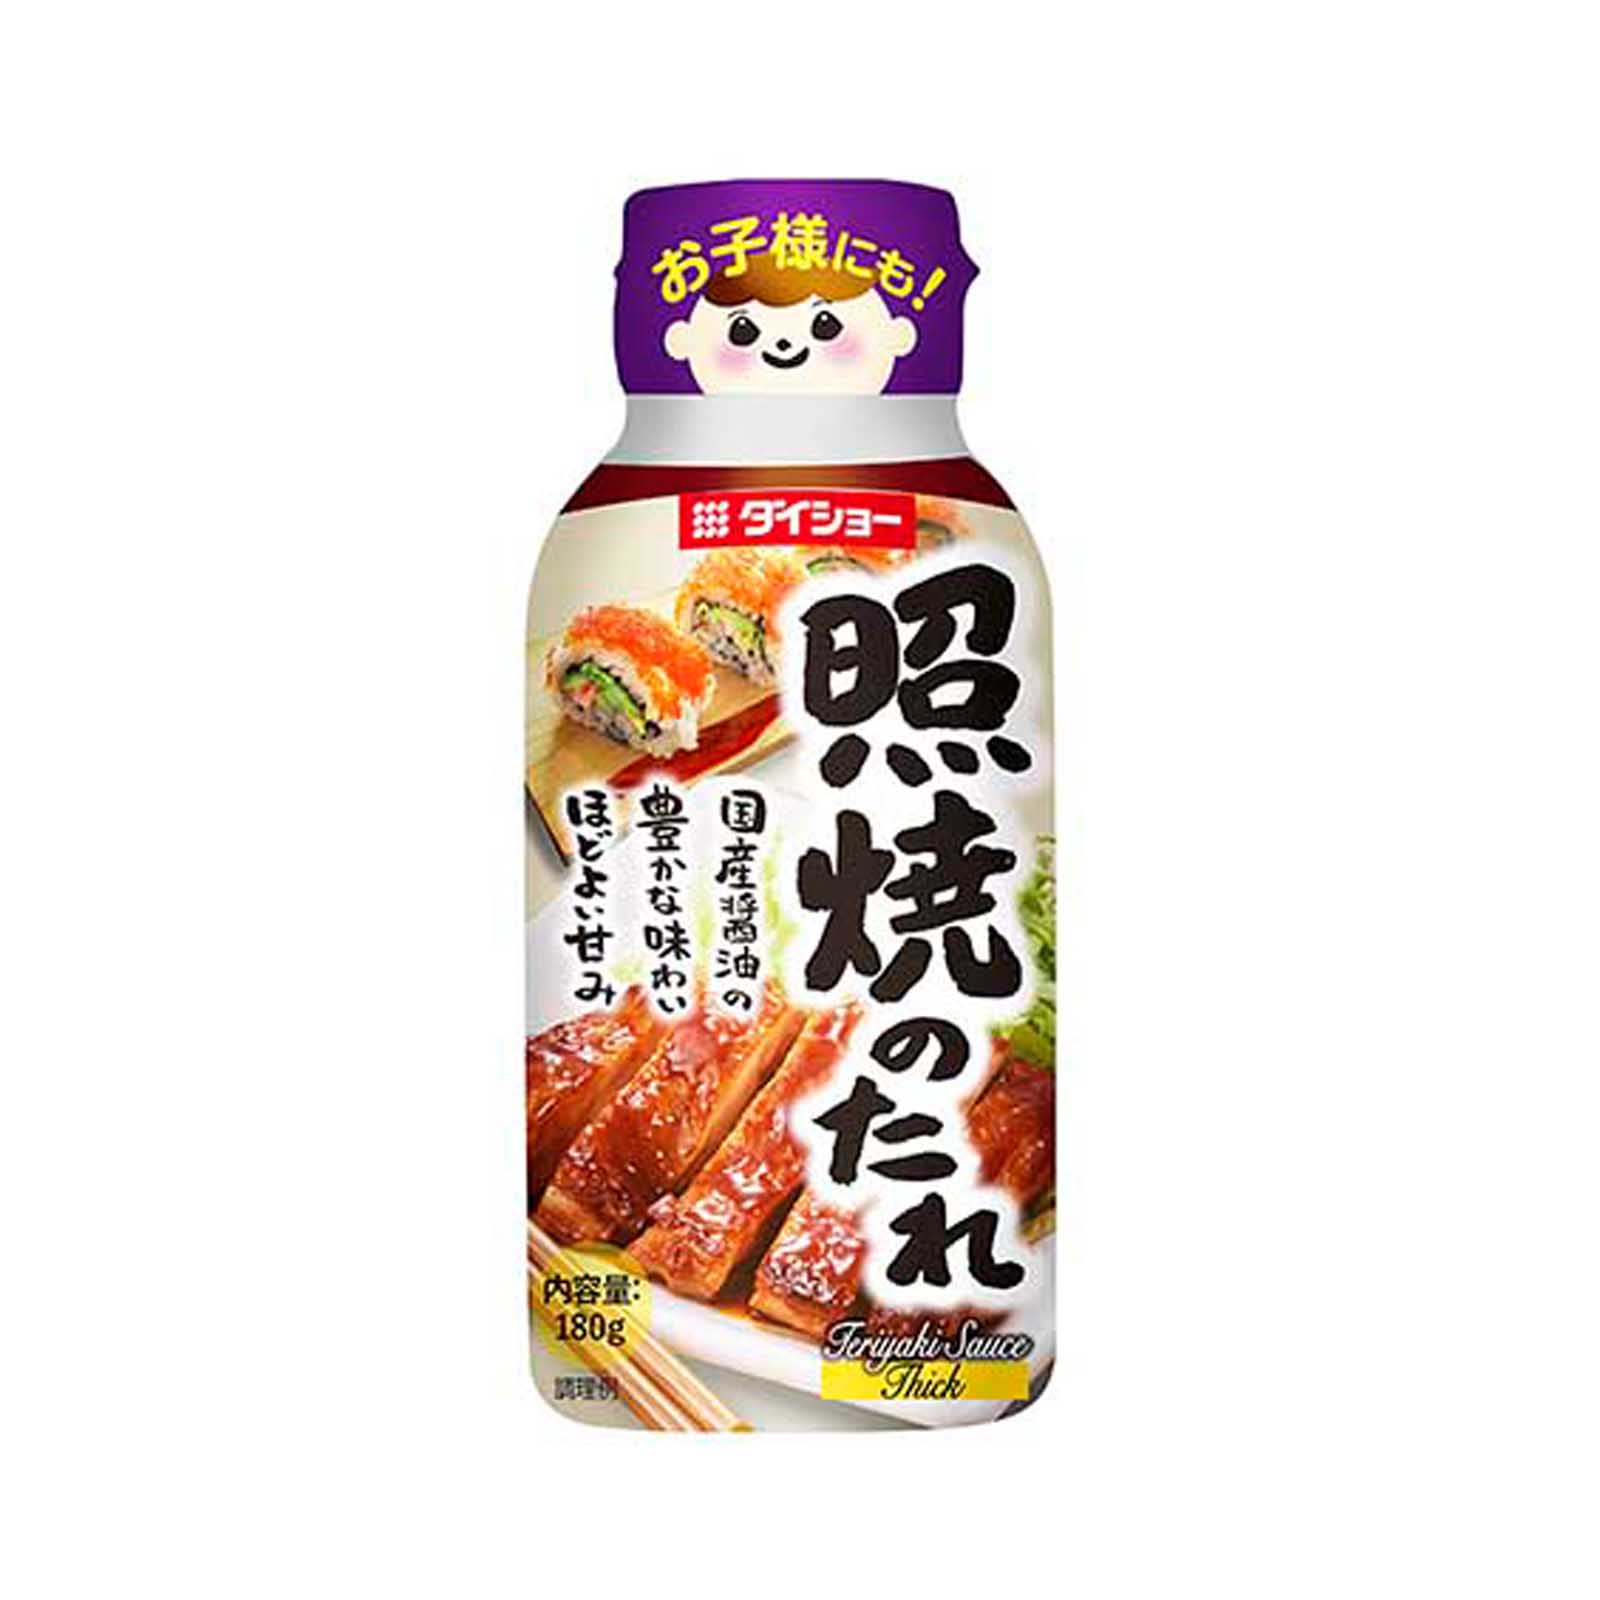 Teriyaki Sauce / Products / Cardinal